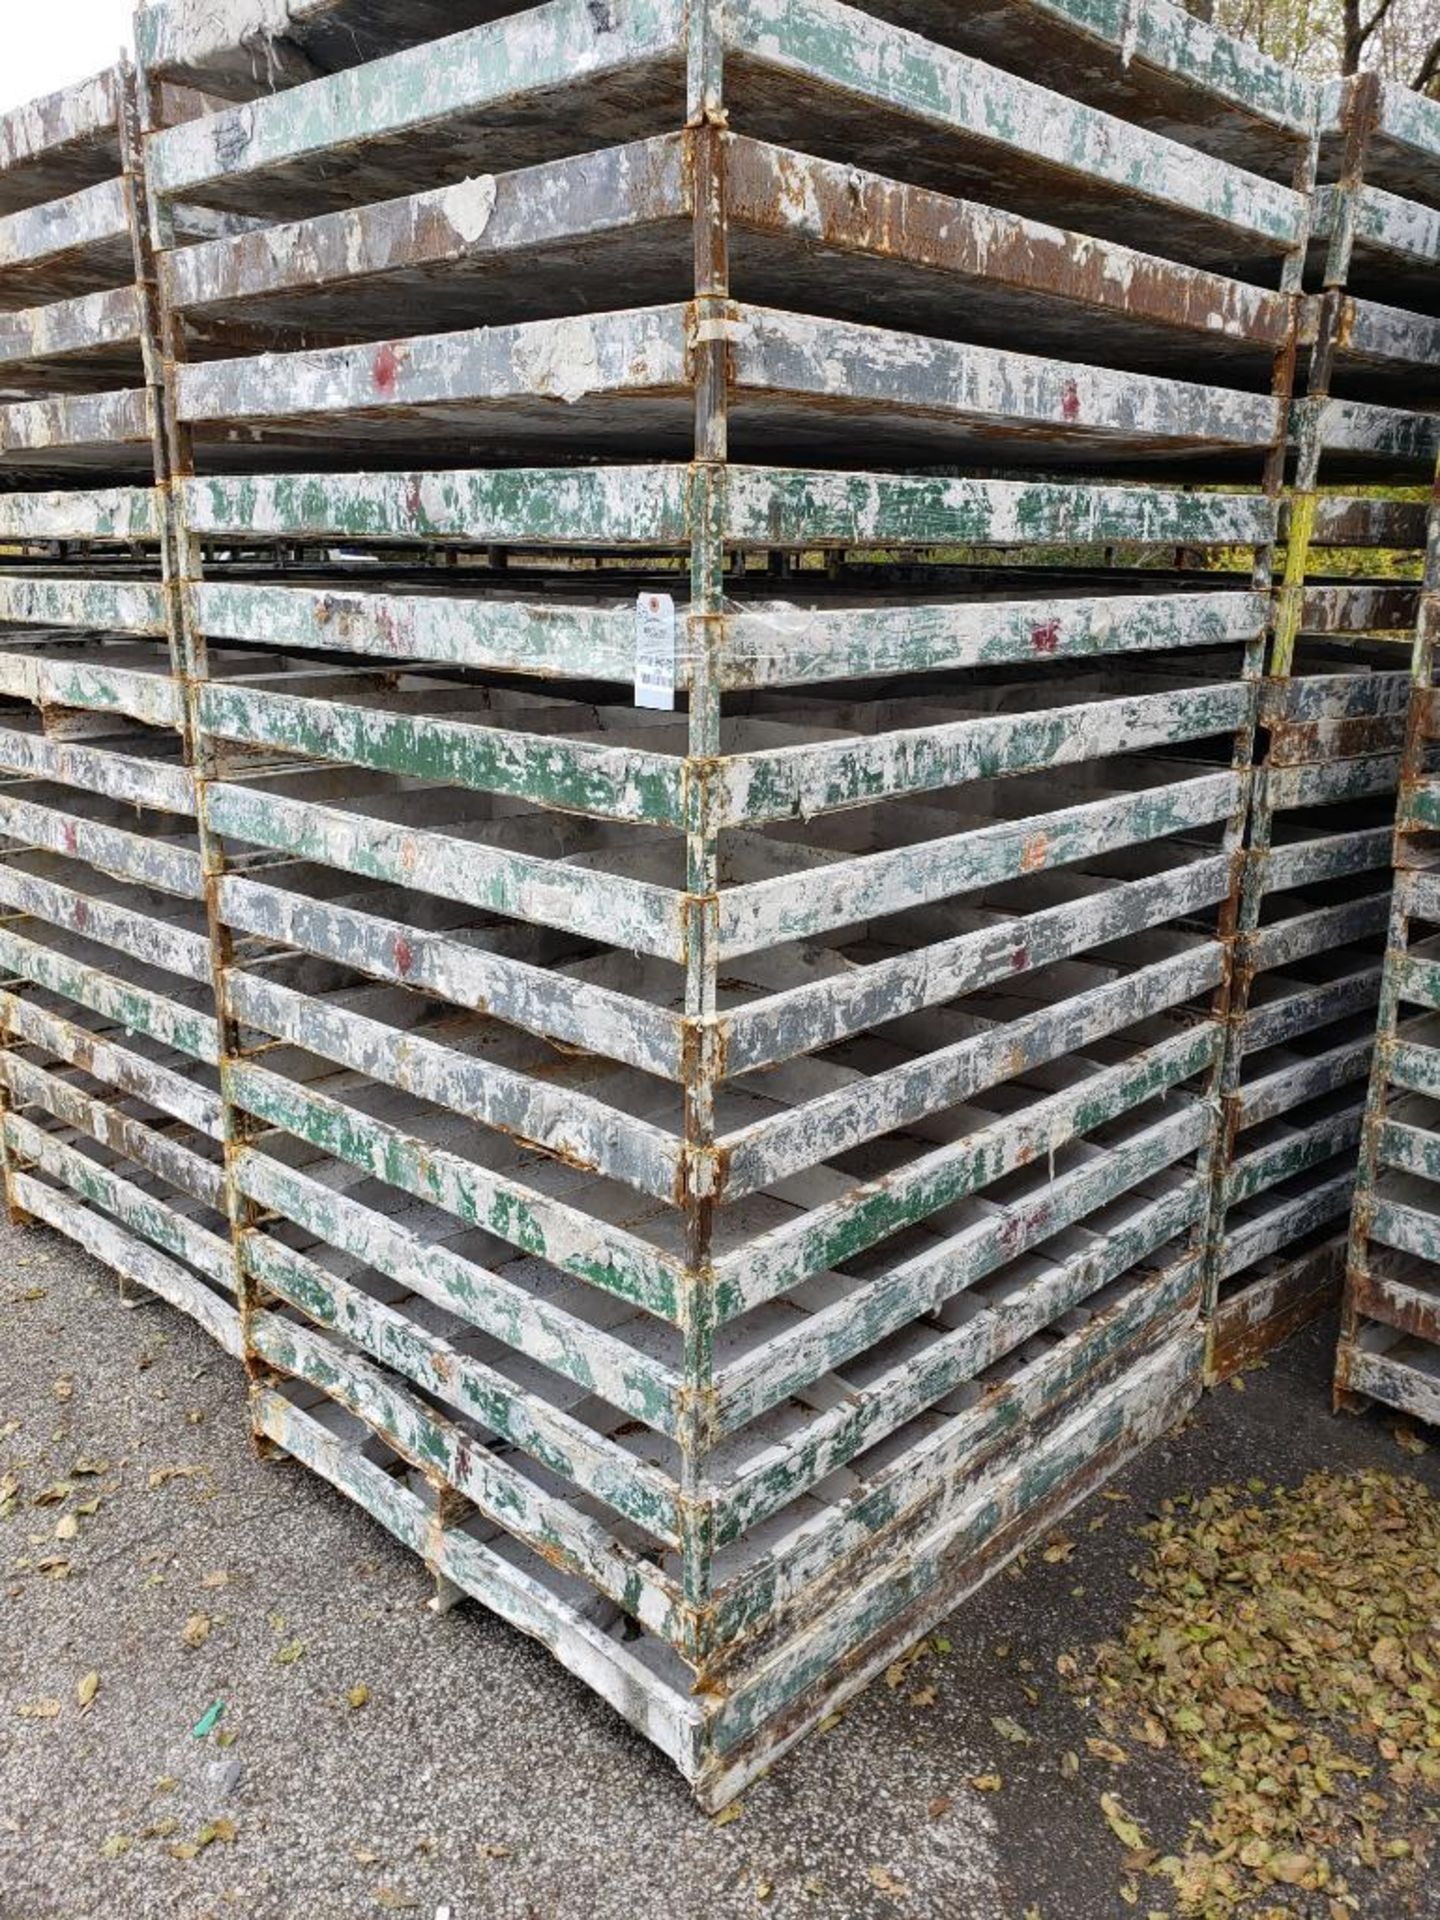 Qty 30 - Steel catch pan pallets. Heavy duty. 54in x 44in x 7in. - Image 5 of 5